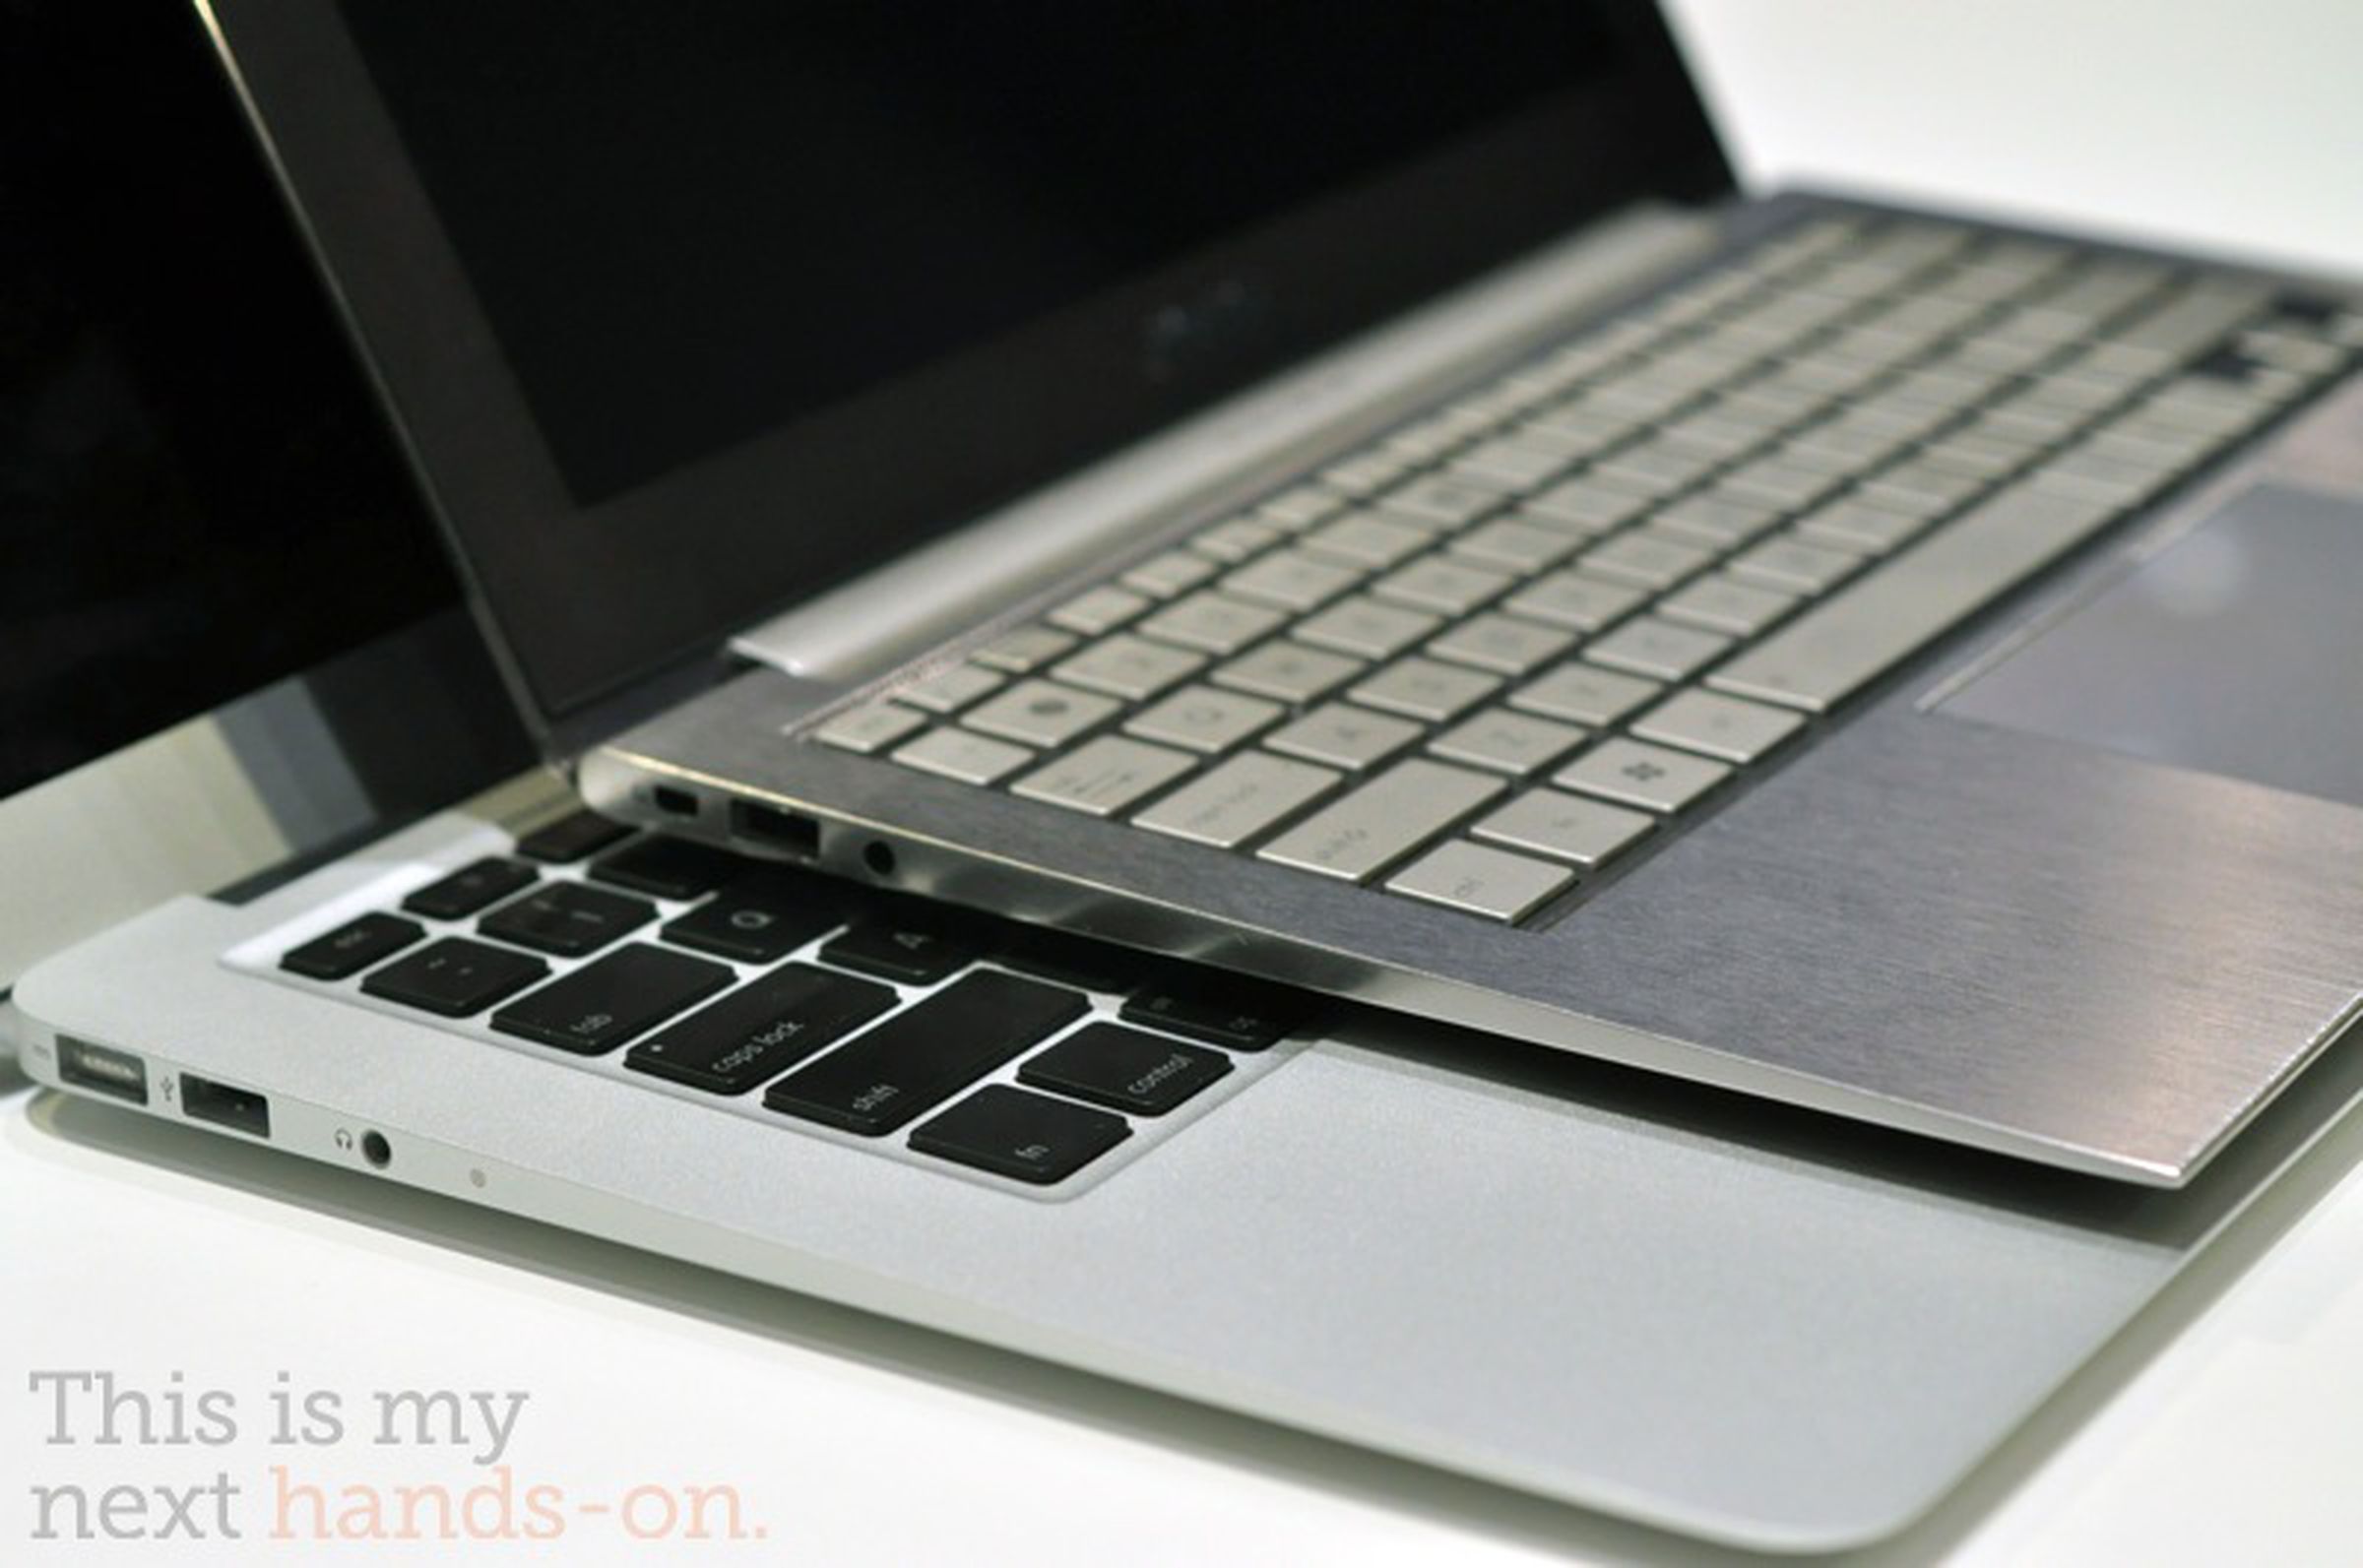 MacBook Air vs ASUS UX21 photos (plus group comparison)